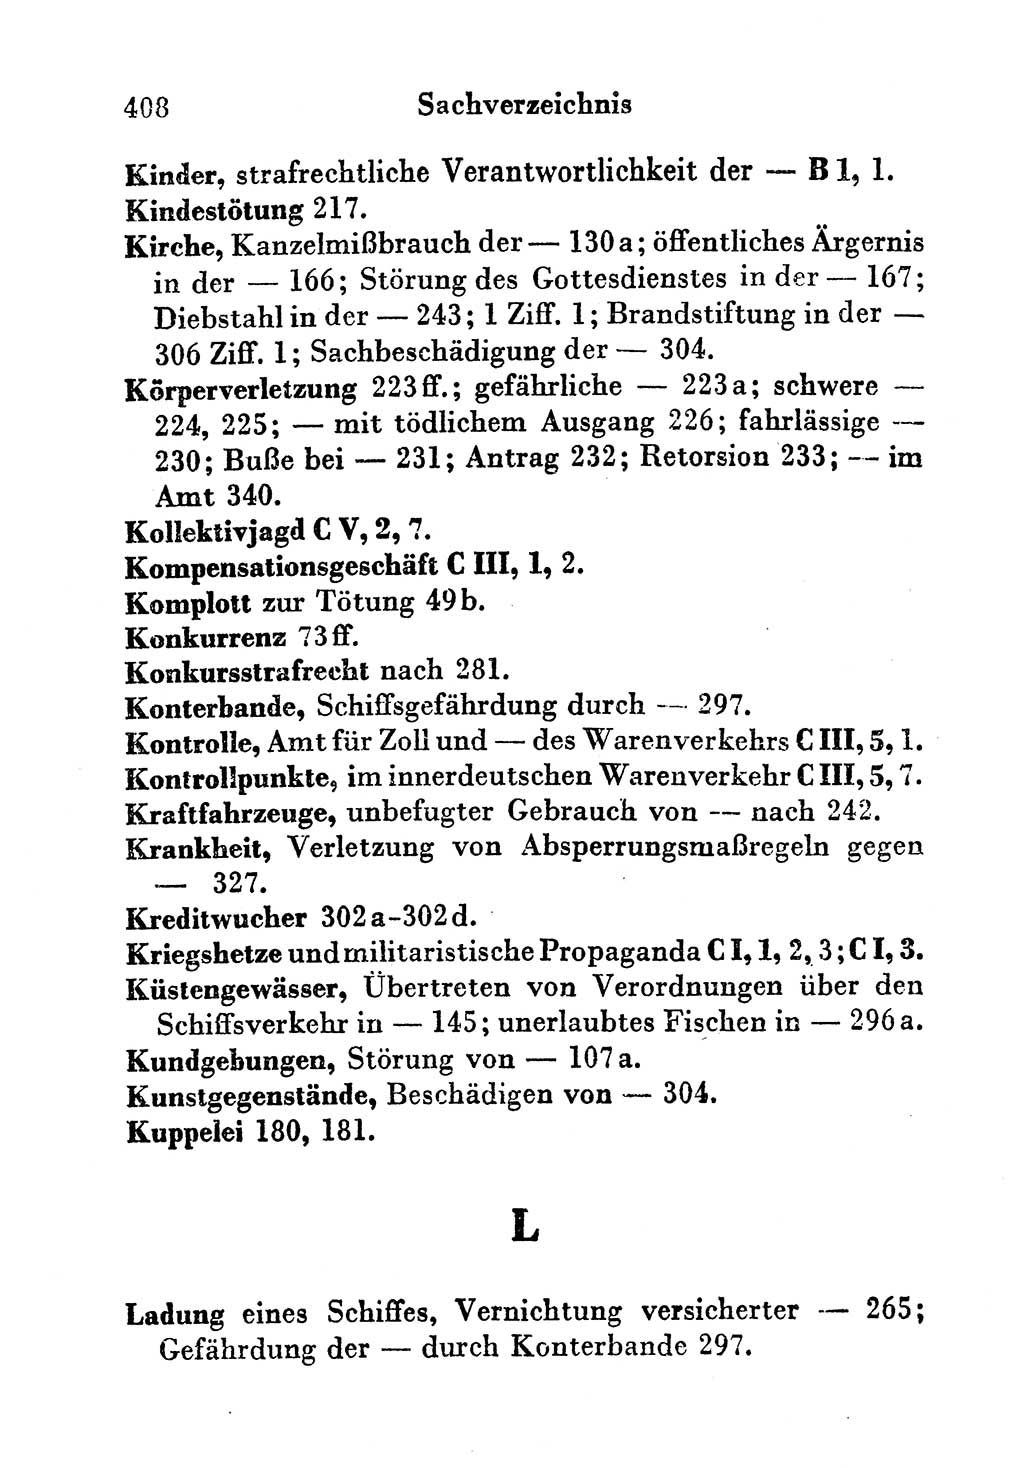 Strafgesetzbuch (StGB) und andere Strafgesetze [Deutsche Demokratische Republik (DDR)] 1956, Seite 408 (StGB Strafges. DDR 1956, S. 408)